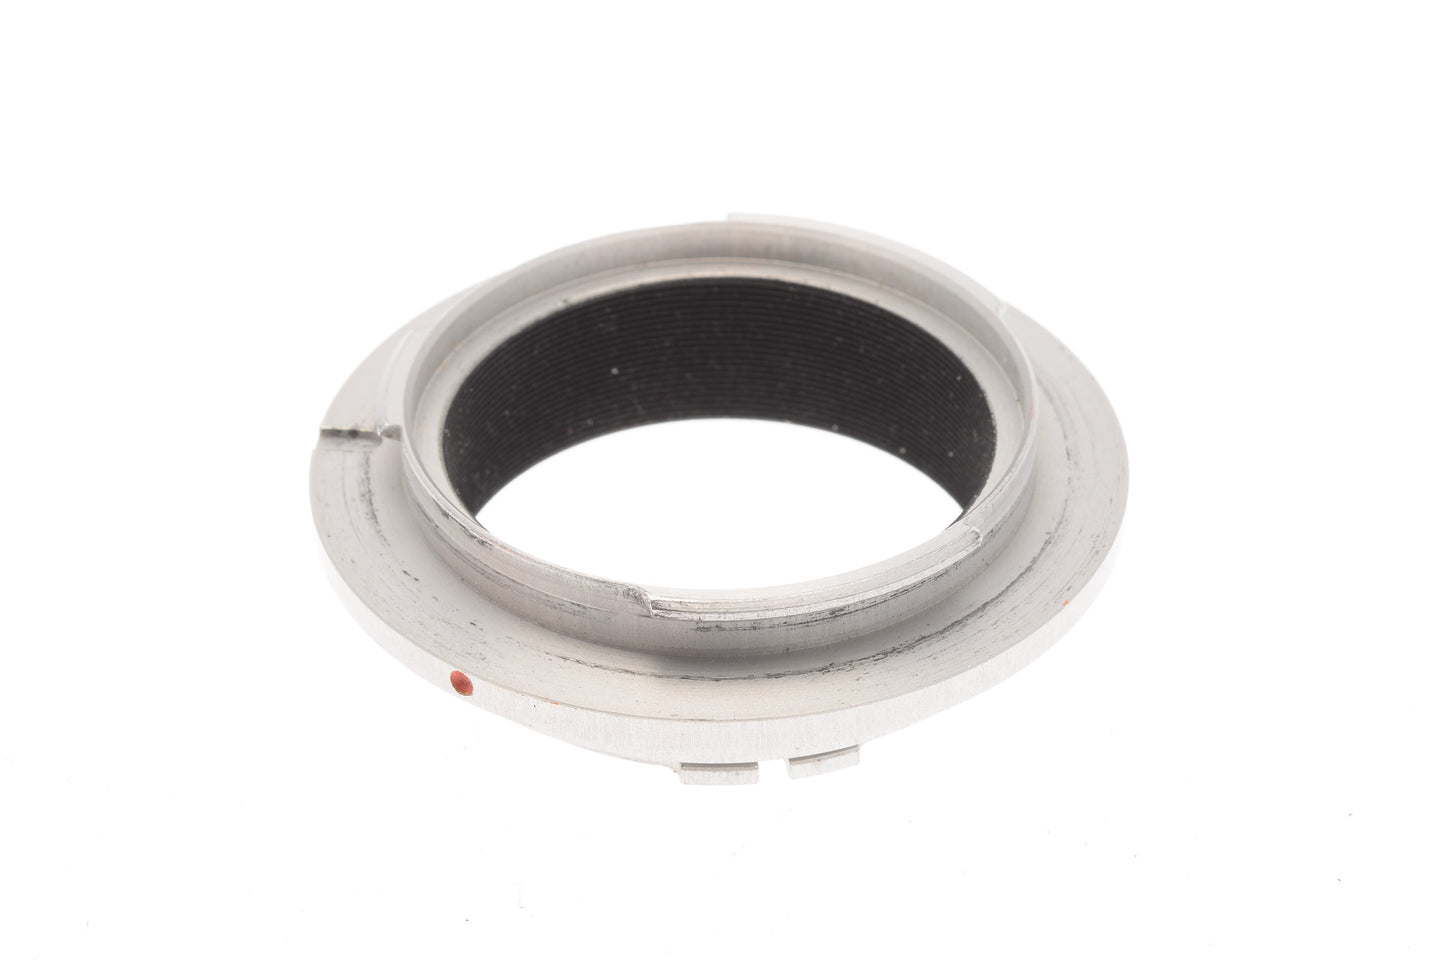 Novoflex LEA Adapter (BAL-U/S, BALCAST To Leicaflex) - Lens Adapter